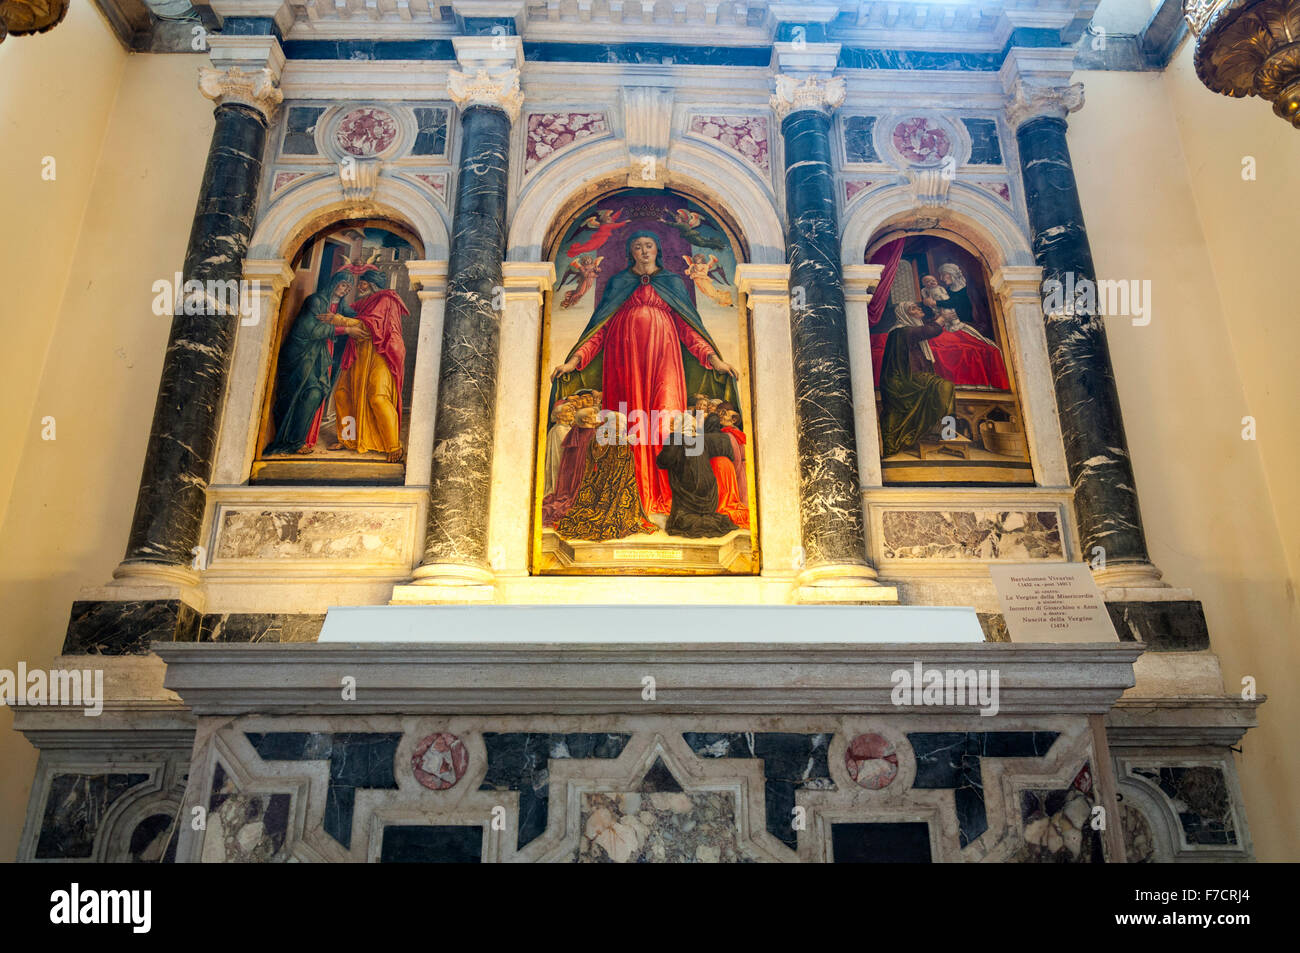 Chiesa di Santa Maria Formosa interior, art paintings by Bartolomeo Vivarini, Venice, Italy Stock Photo